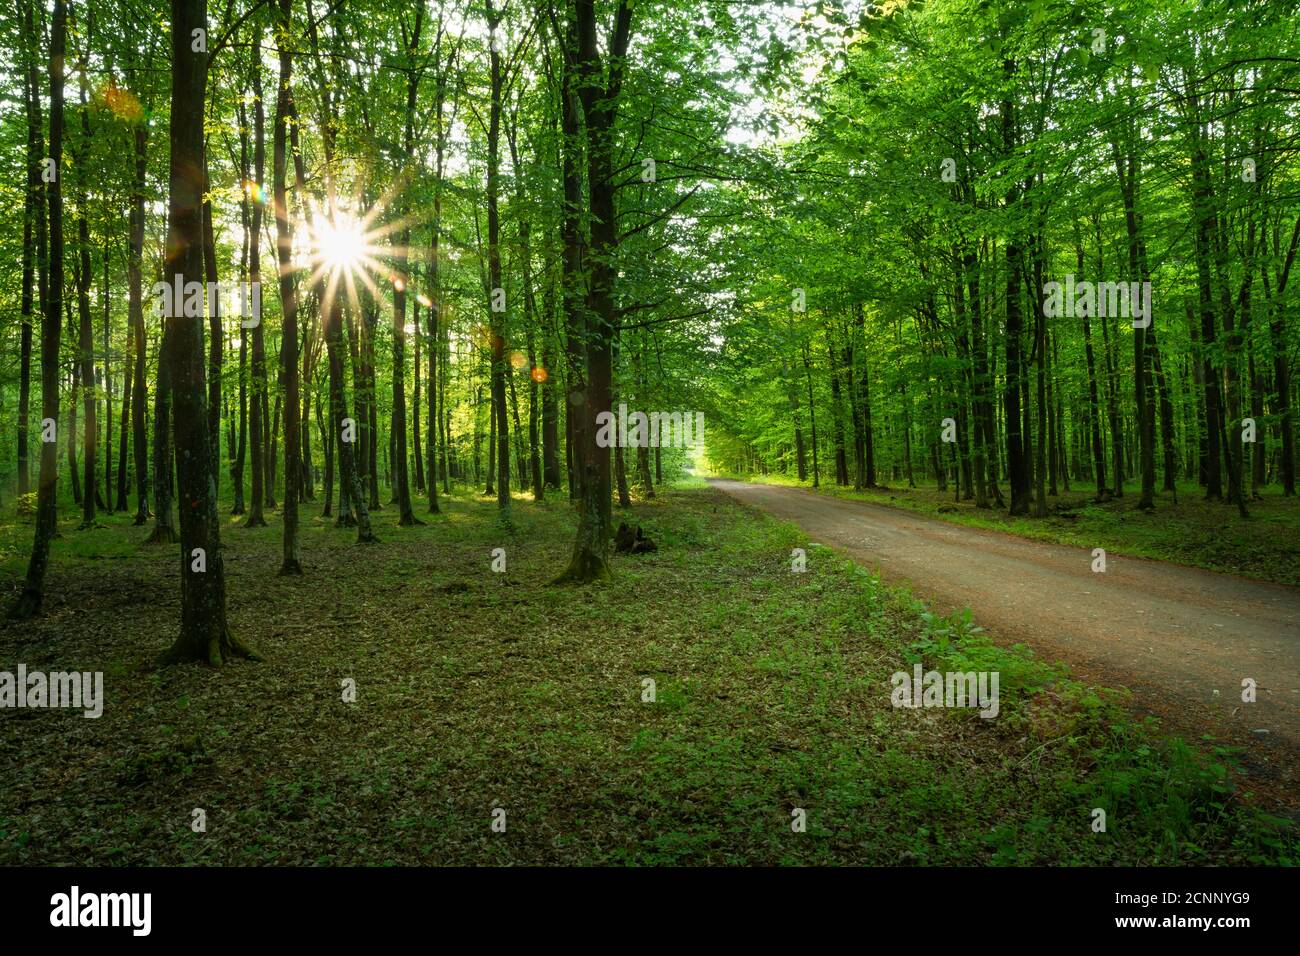 Reflet du soleil dans la forêt avec une route de terre Banque D'Images